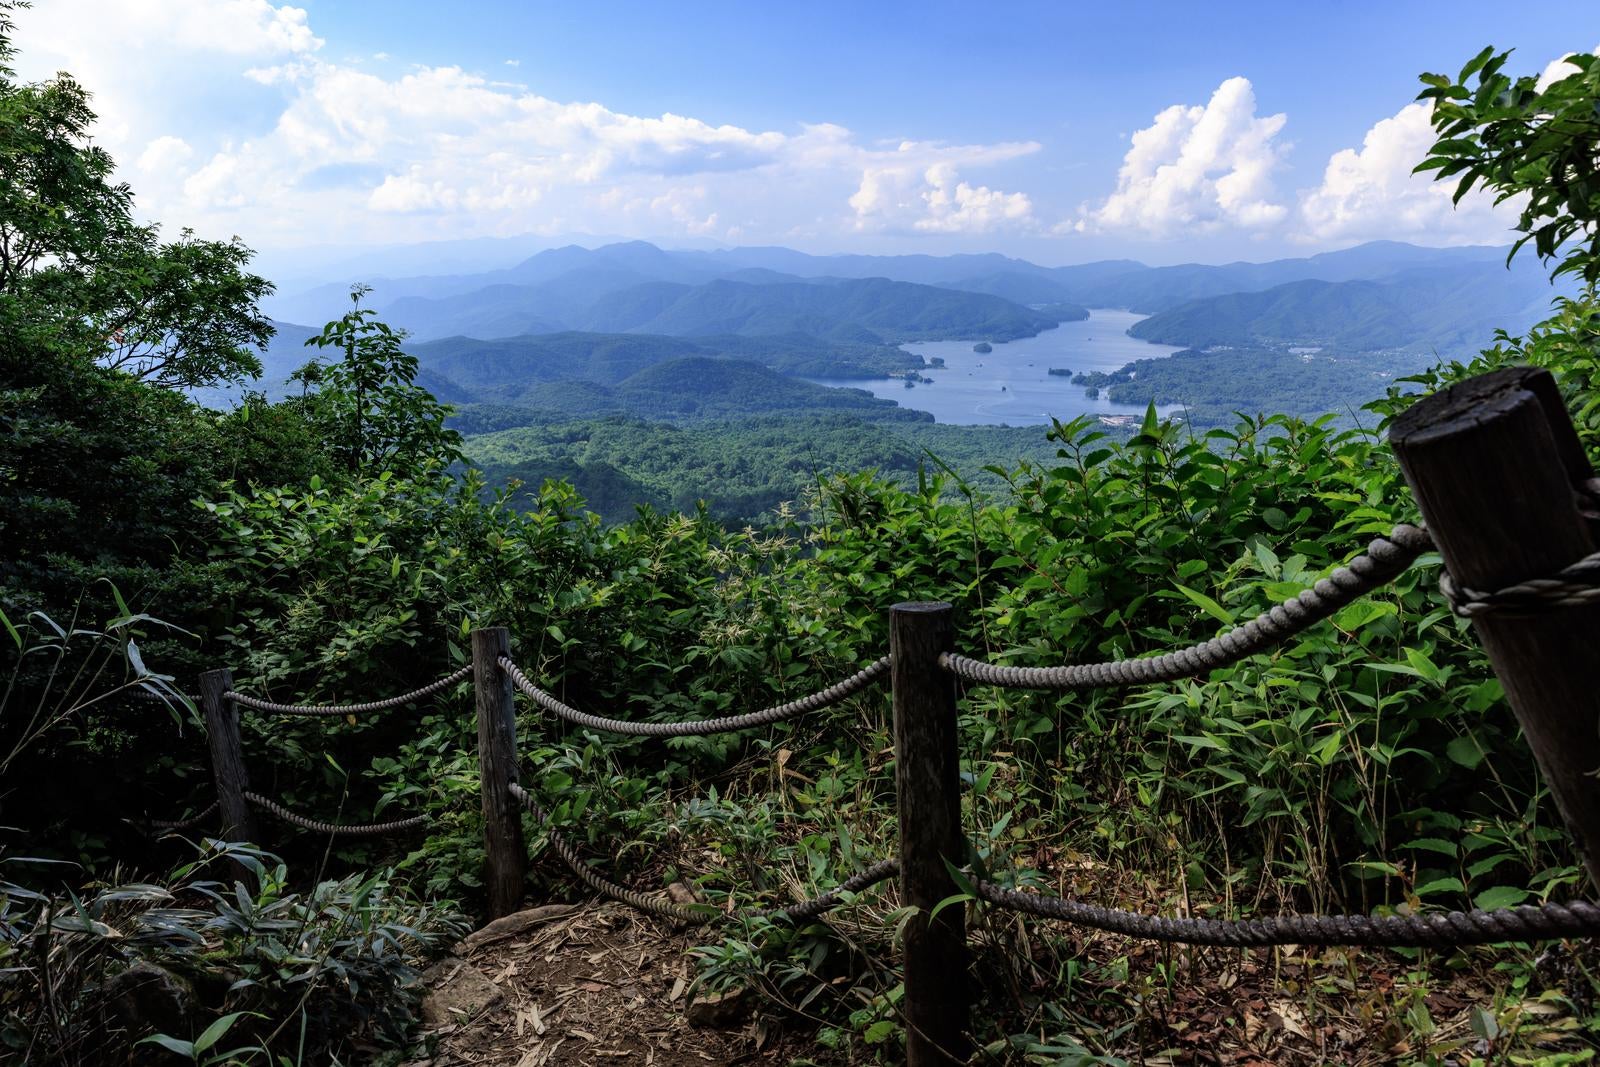 「磐梯町八方台登山口からの登山コースで見る景色」の写真